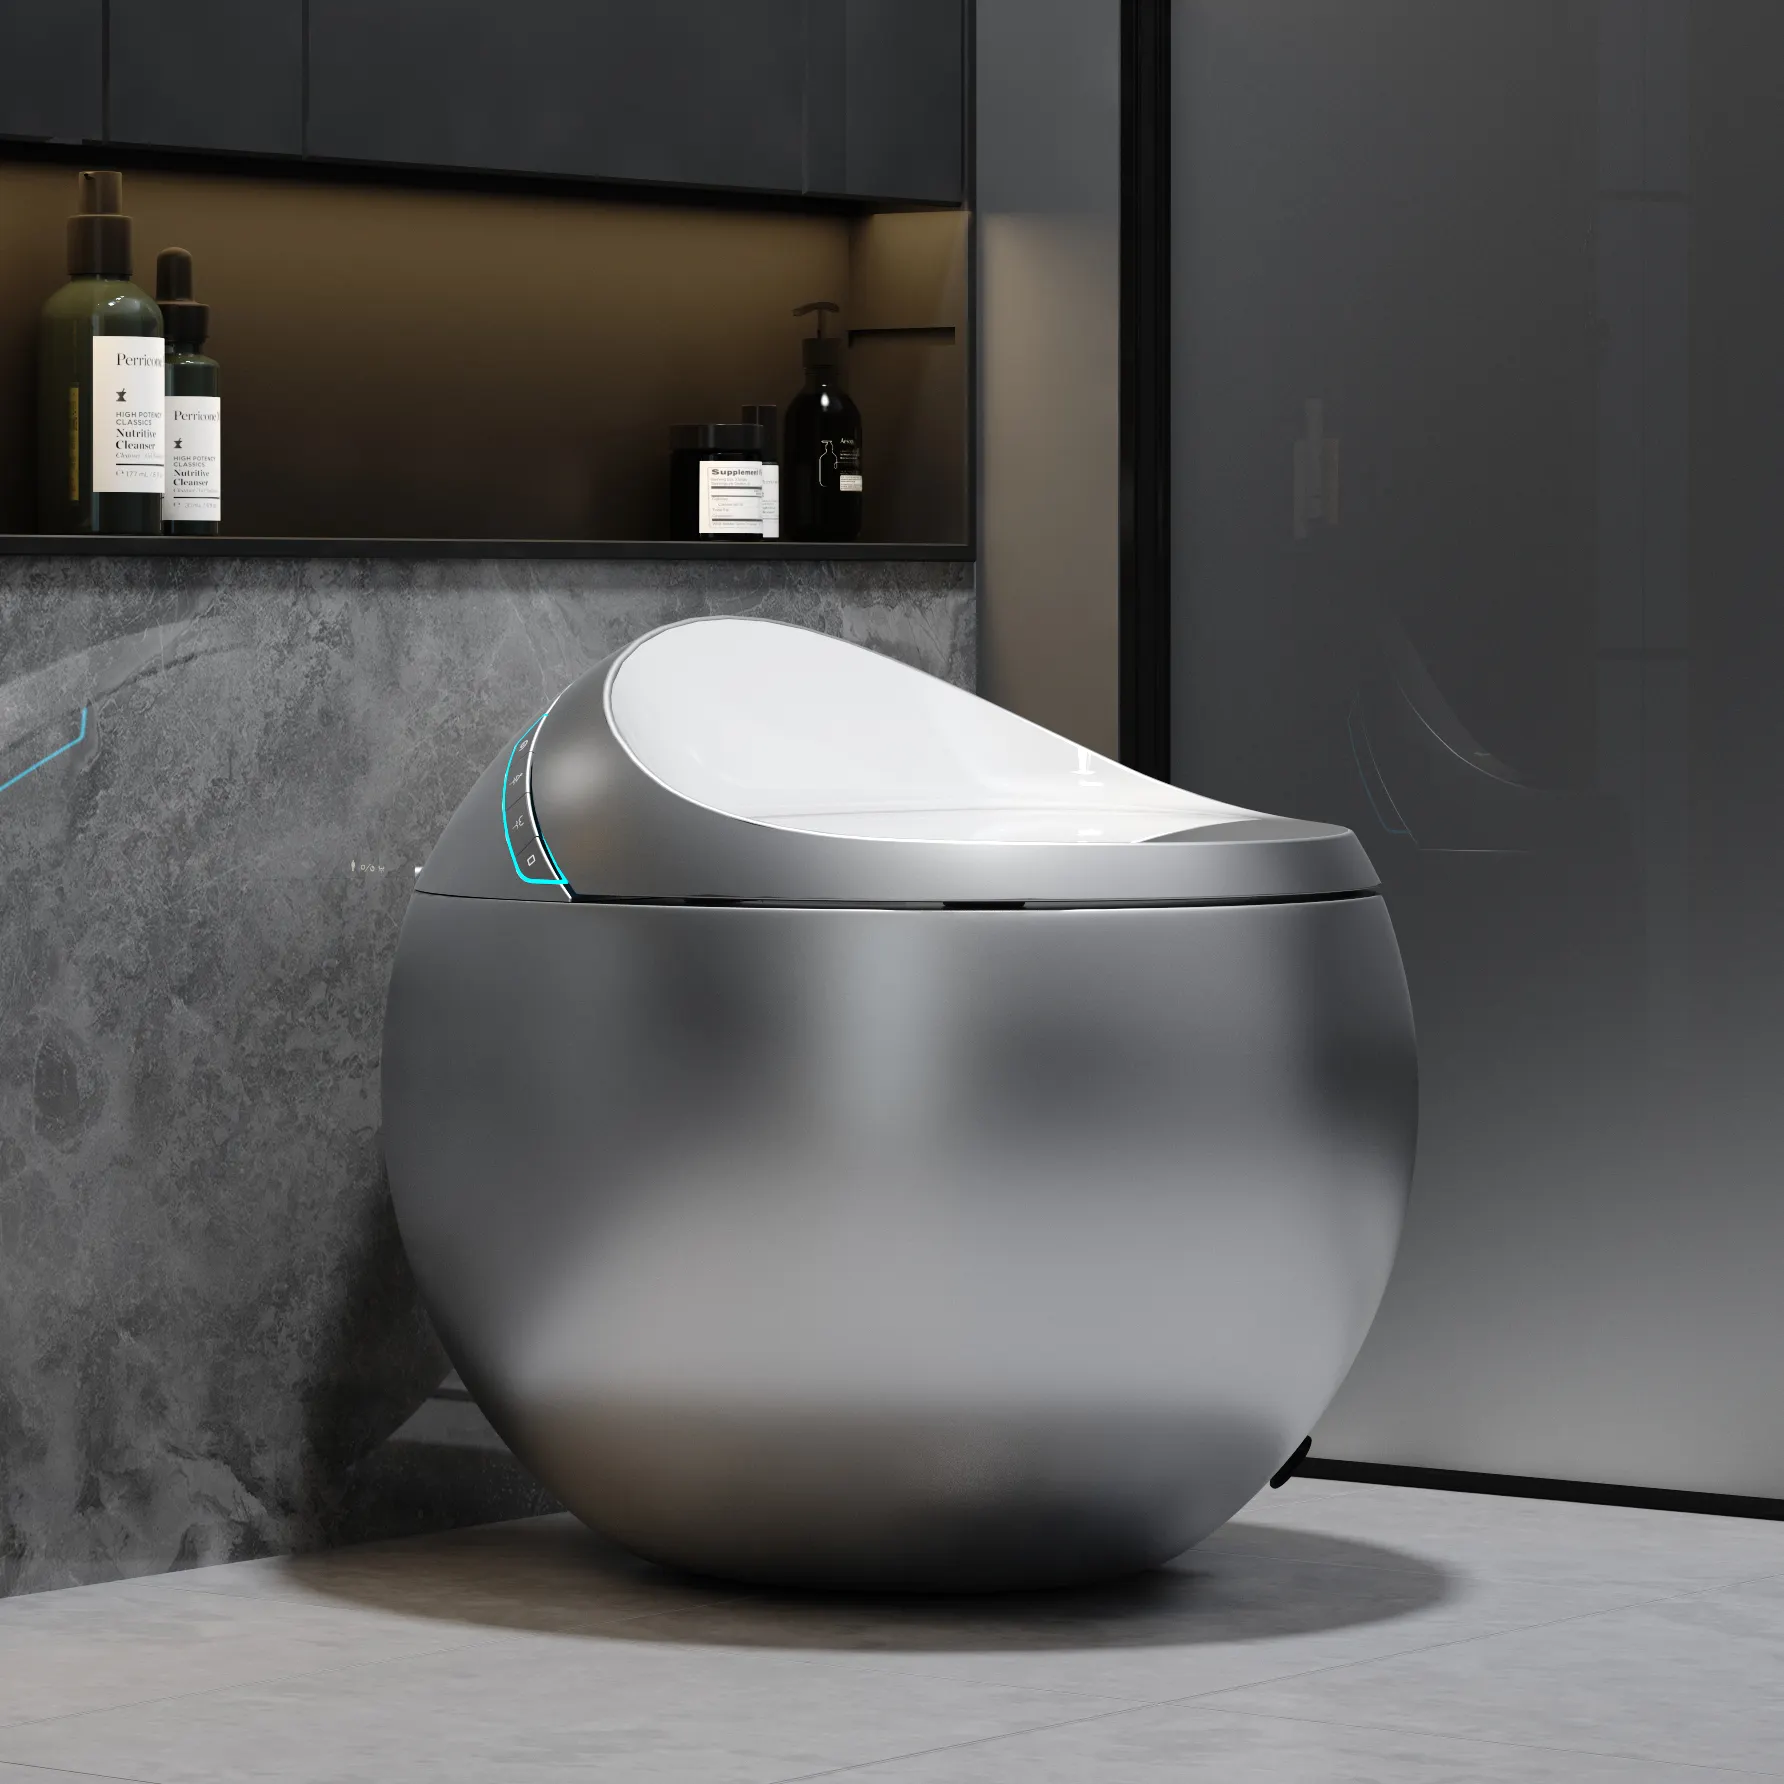 Yeni tasarım banyo sıhhi tesisat tek parça akıllı Wc tuvalet kase yumurta şekli otomatik yuvarlak tuvalet